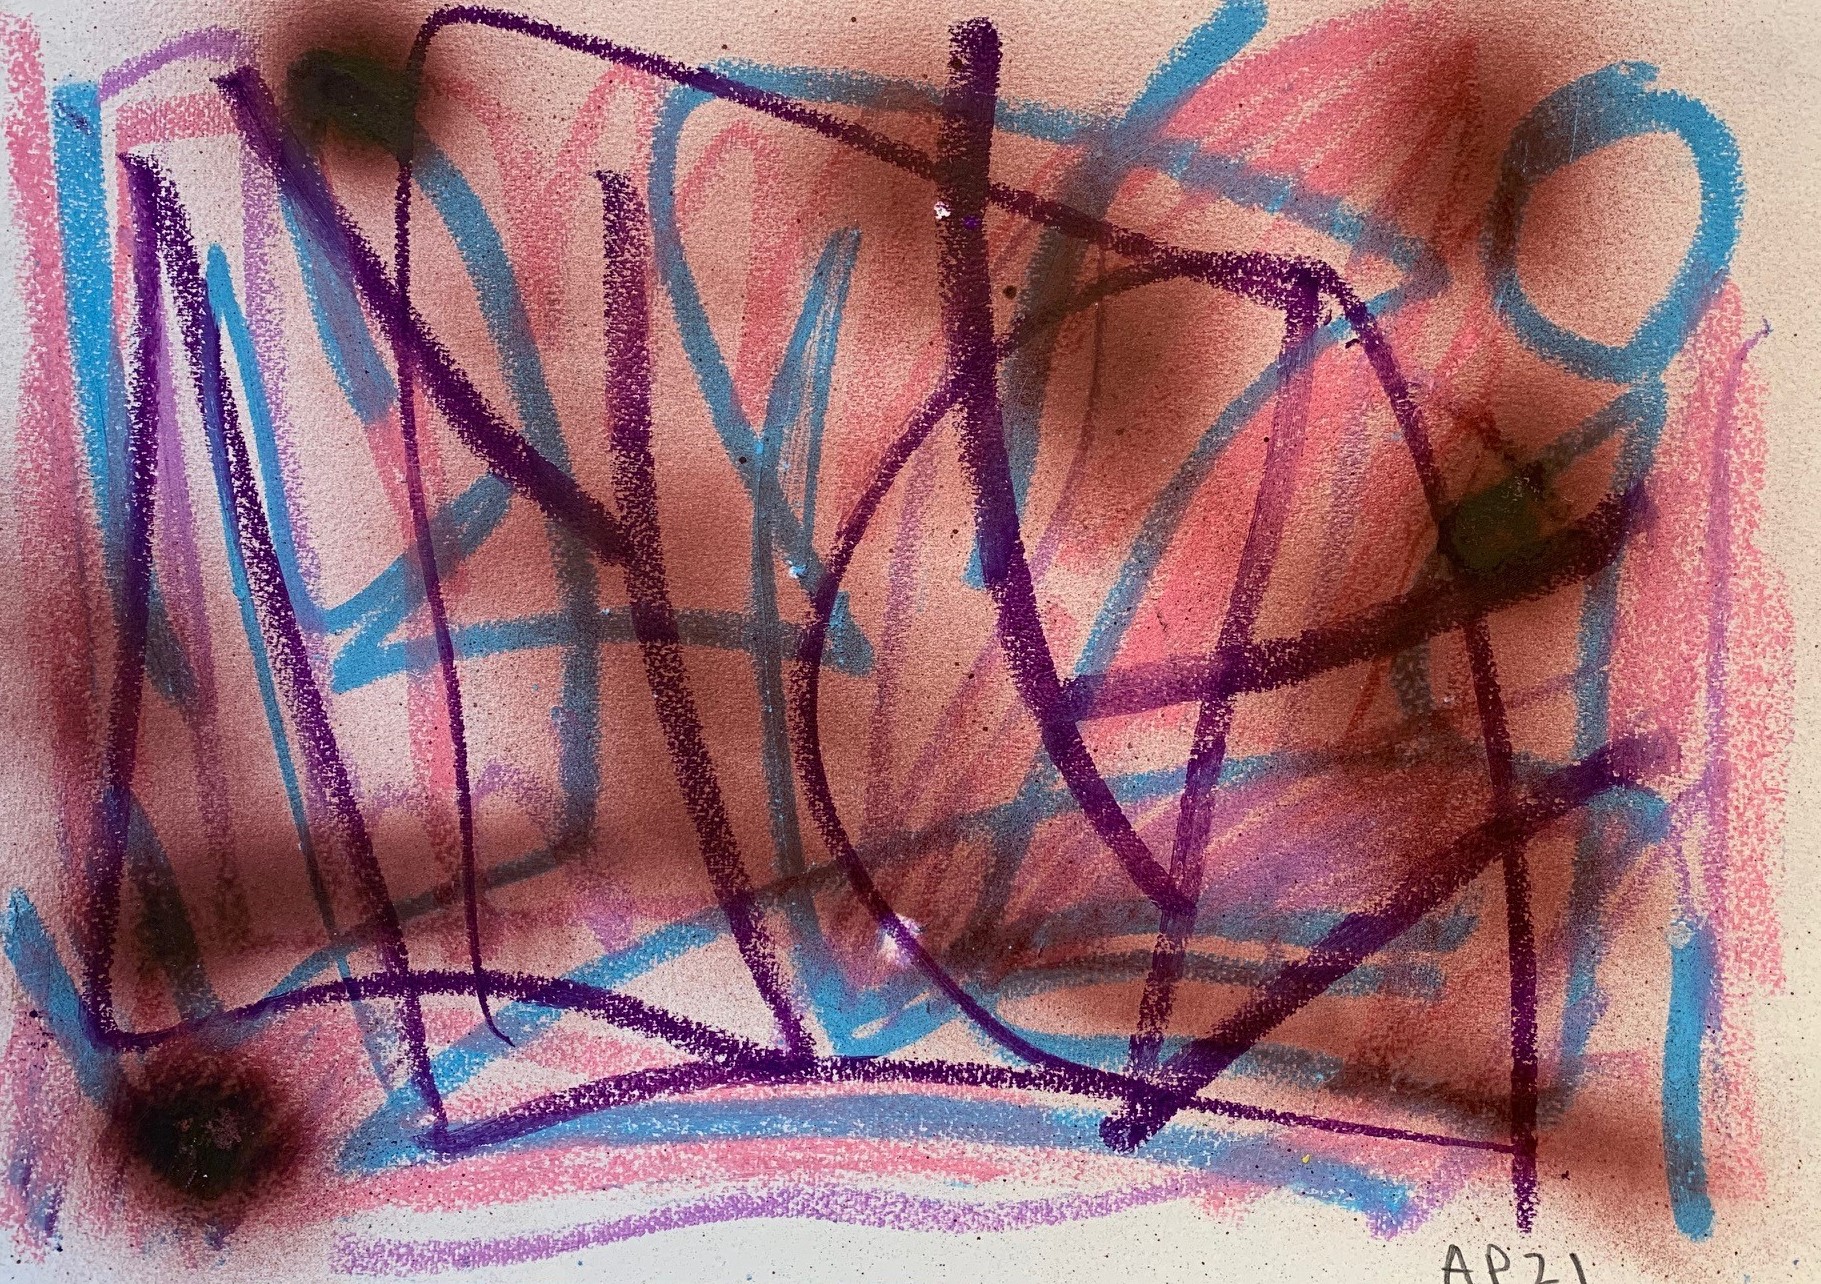 Poulet_Untitled 3 (Walk )_ pastel on paper _30 x 42cm (2)